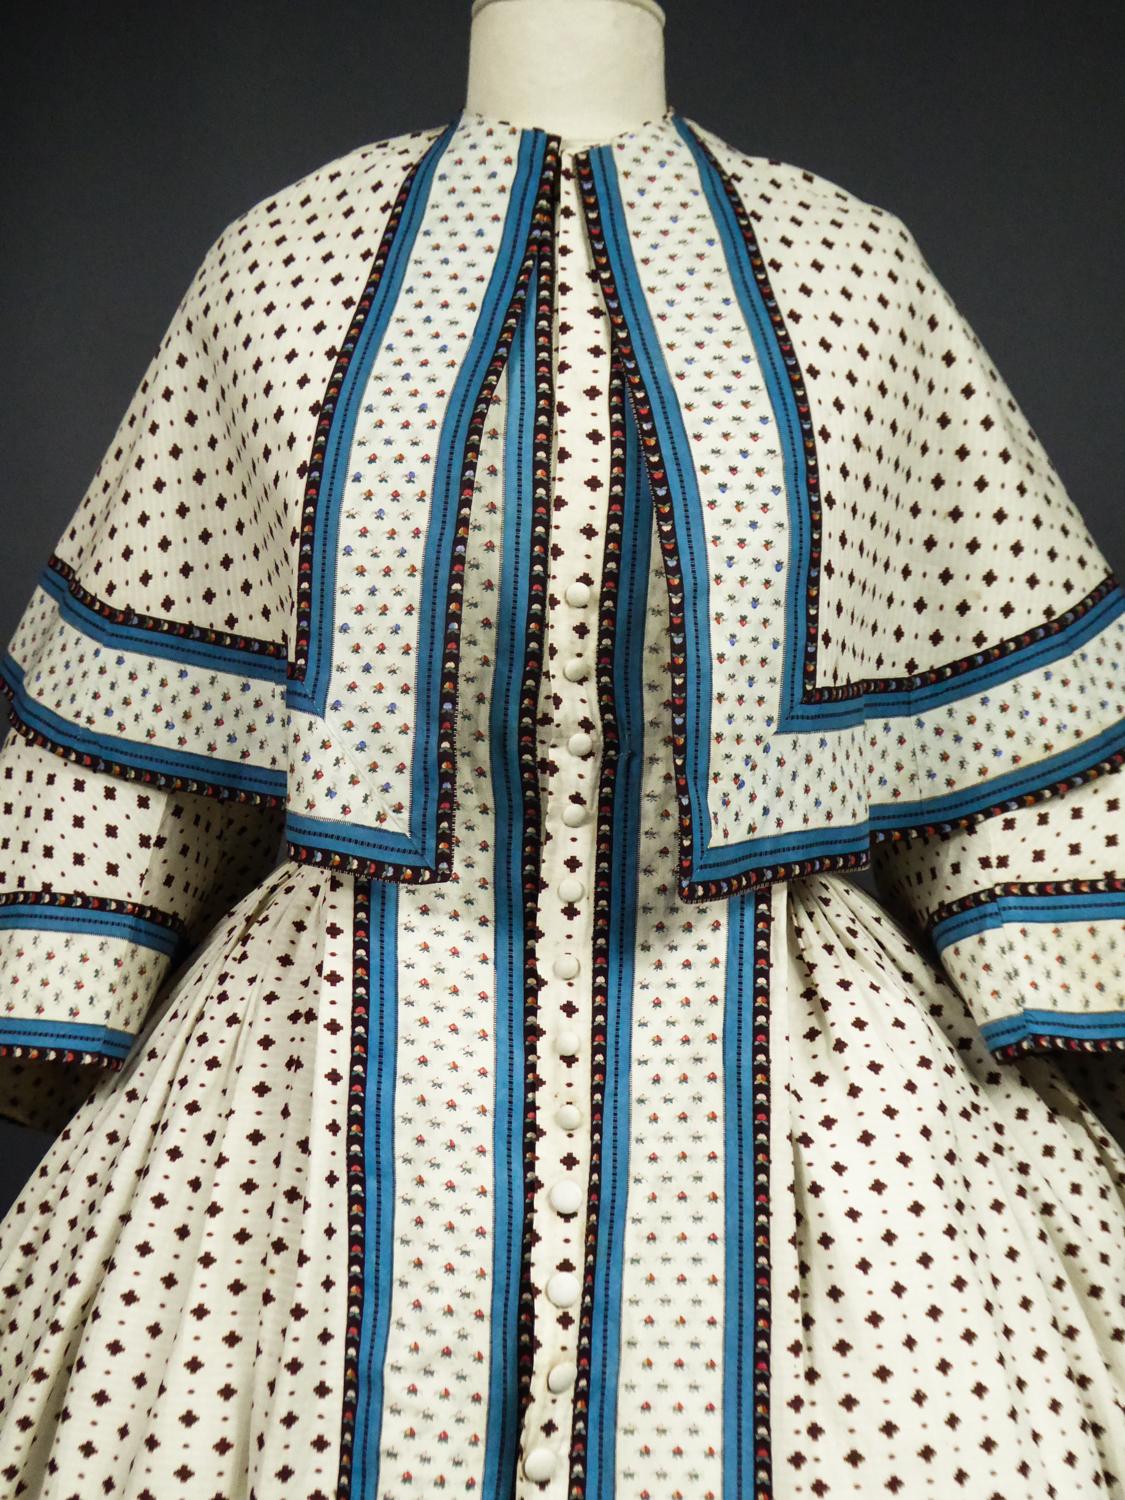 A Printed Cotton Crinoline Day Dress - France Napoleon III Period Circa 1865 10